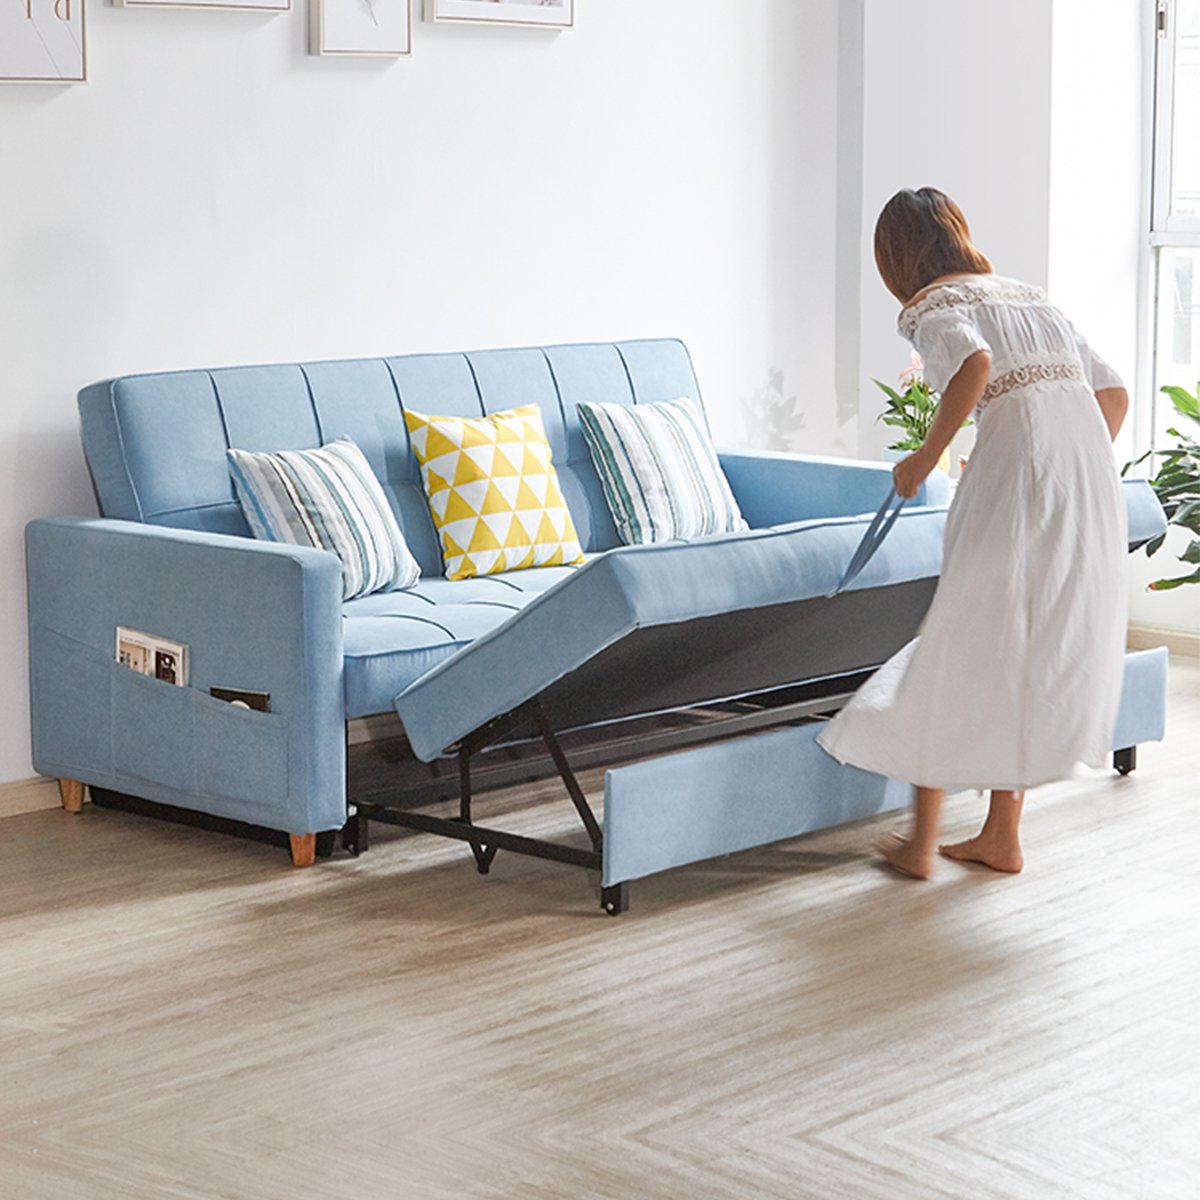 乳胶沙发床可折叠多功能客厅小户型布艺沙发双人坐卧两用折叠沙发床